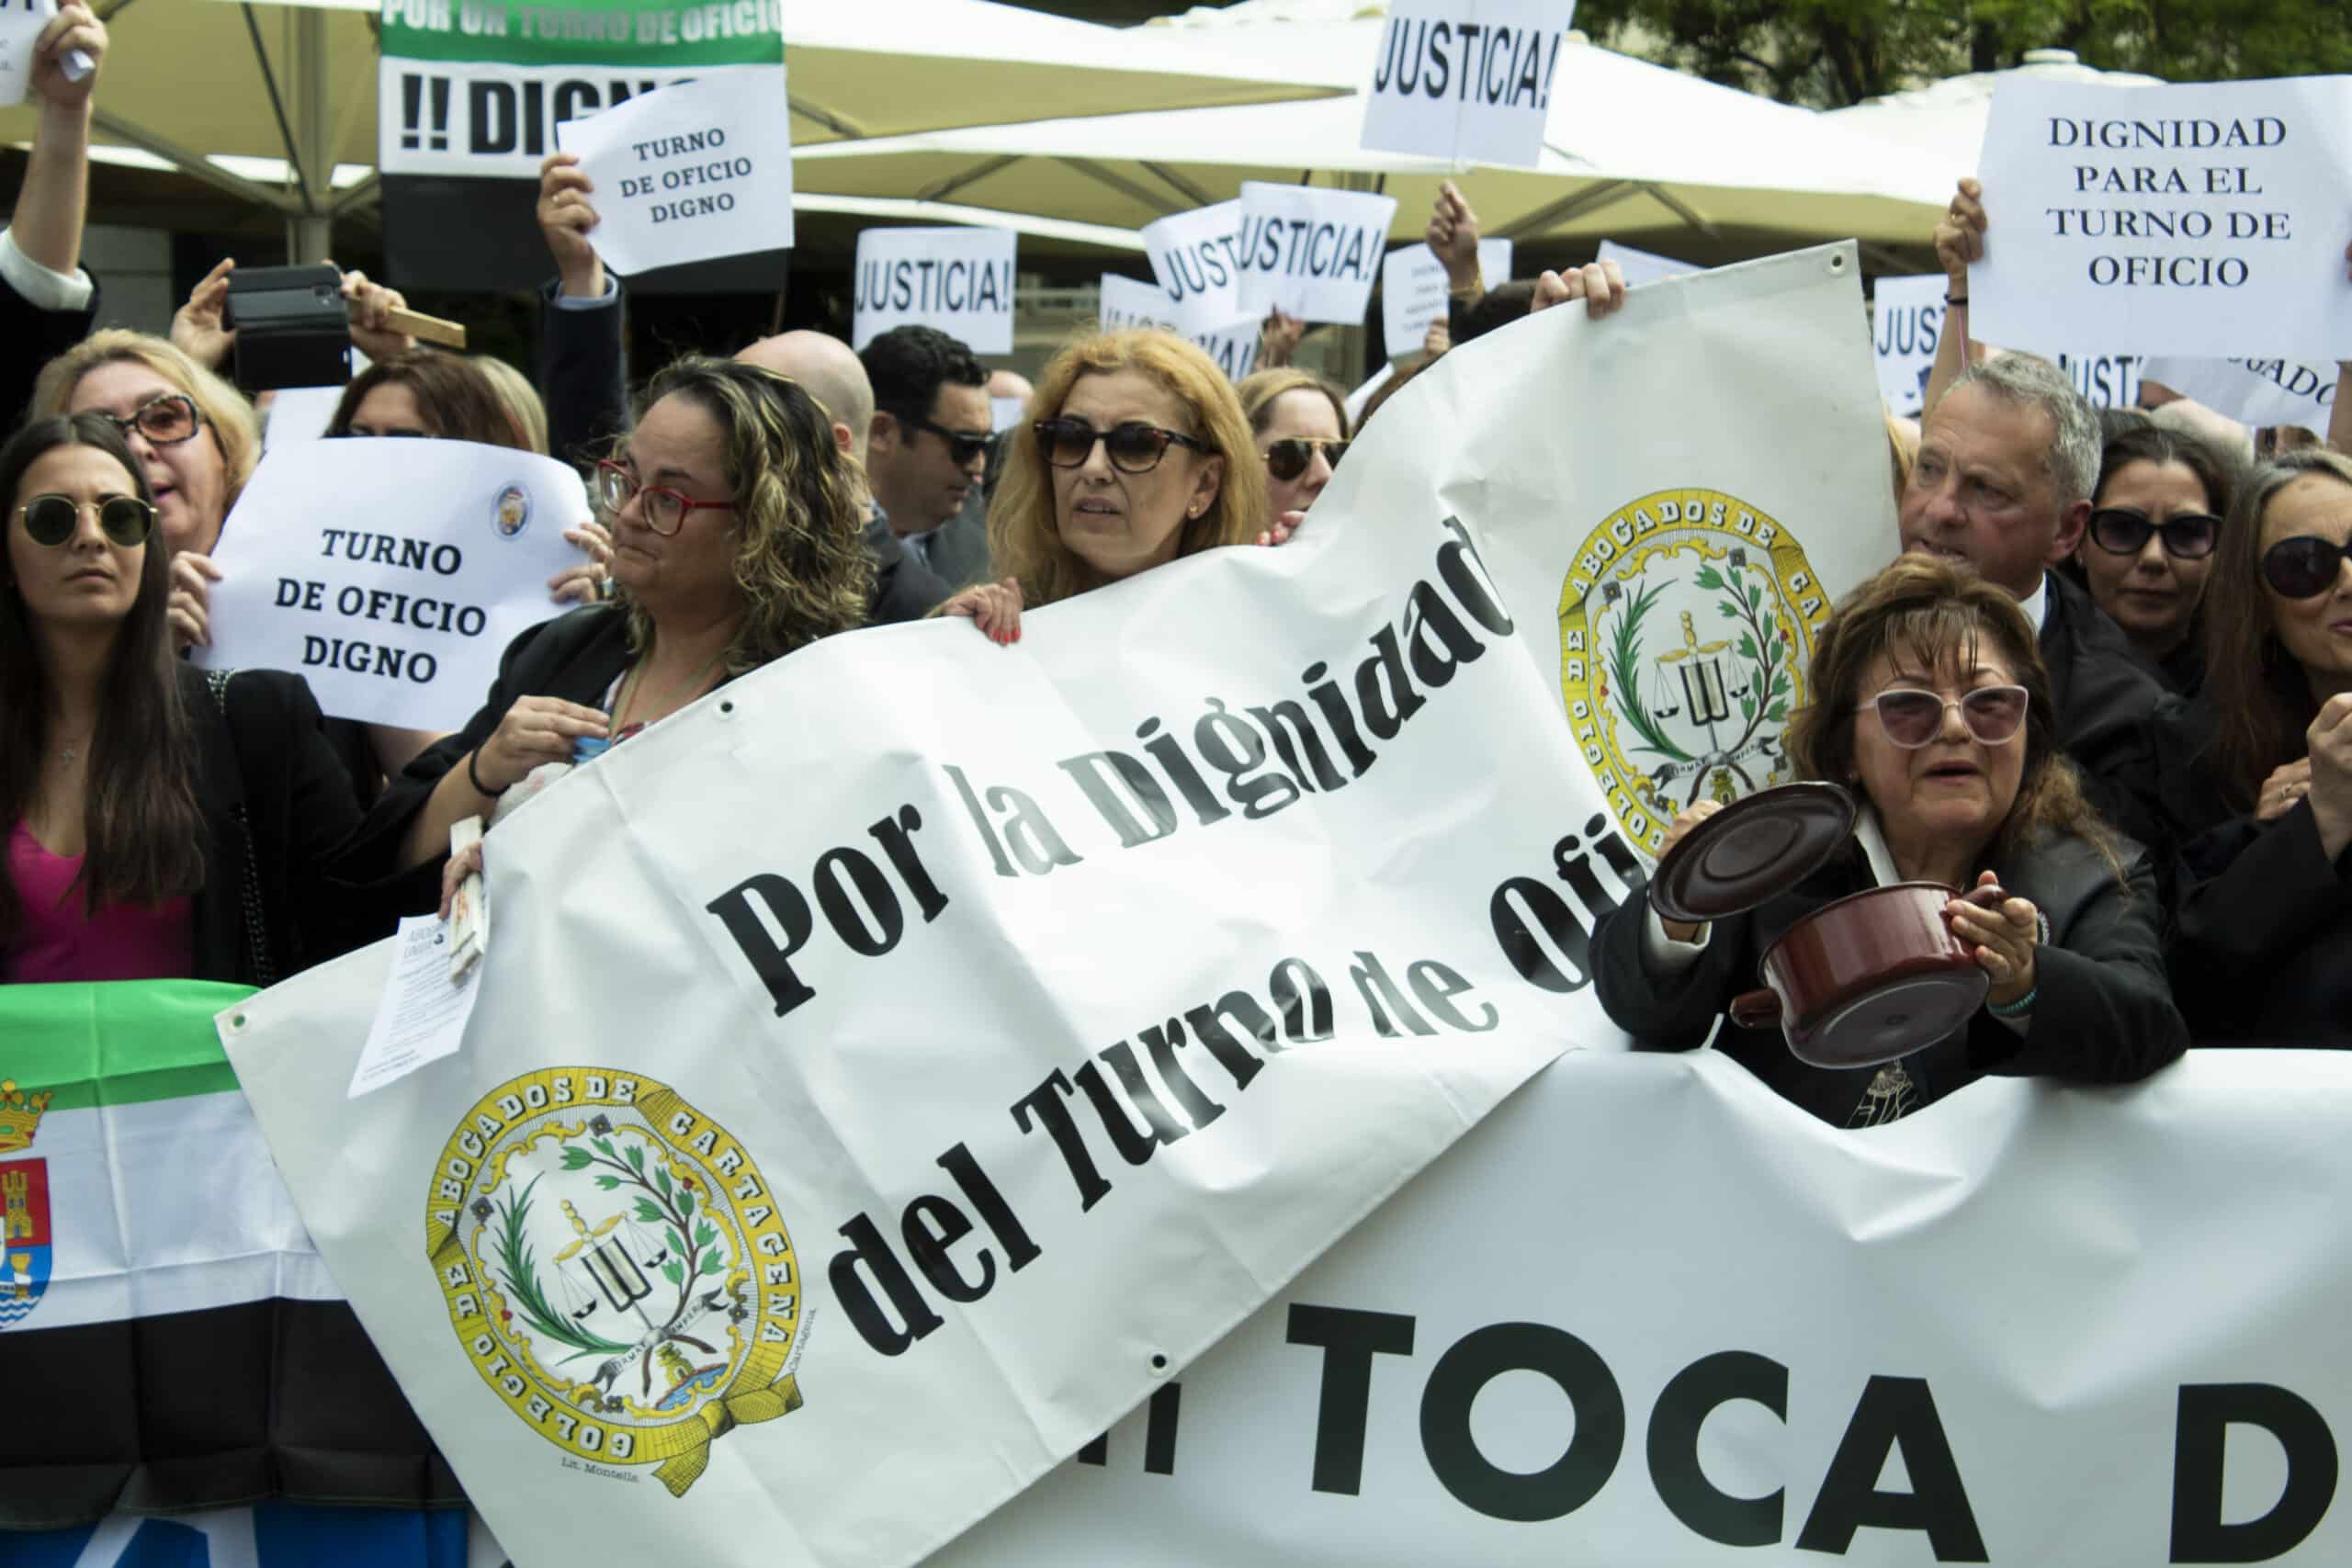 El Sindicato de Abogados Venia convoca una huelga del turno de oficio para el 12 de julio